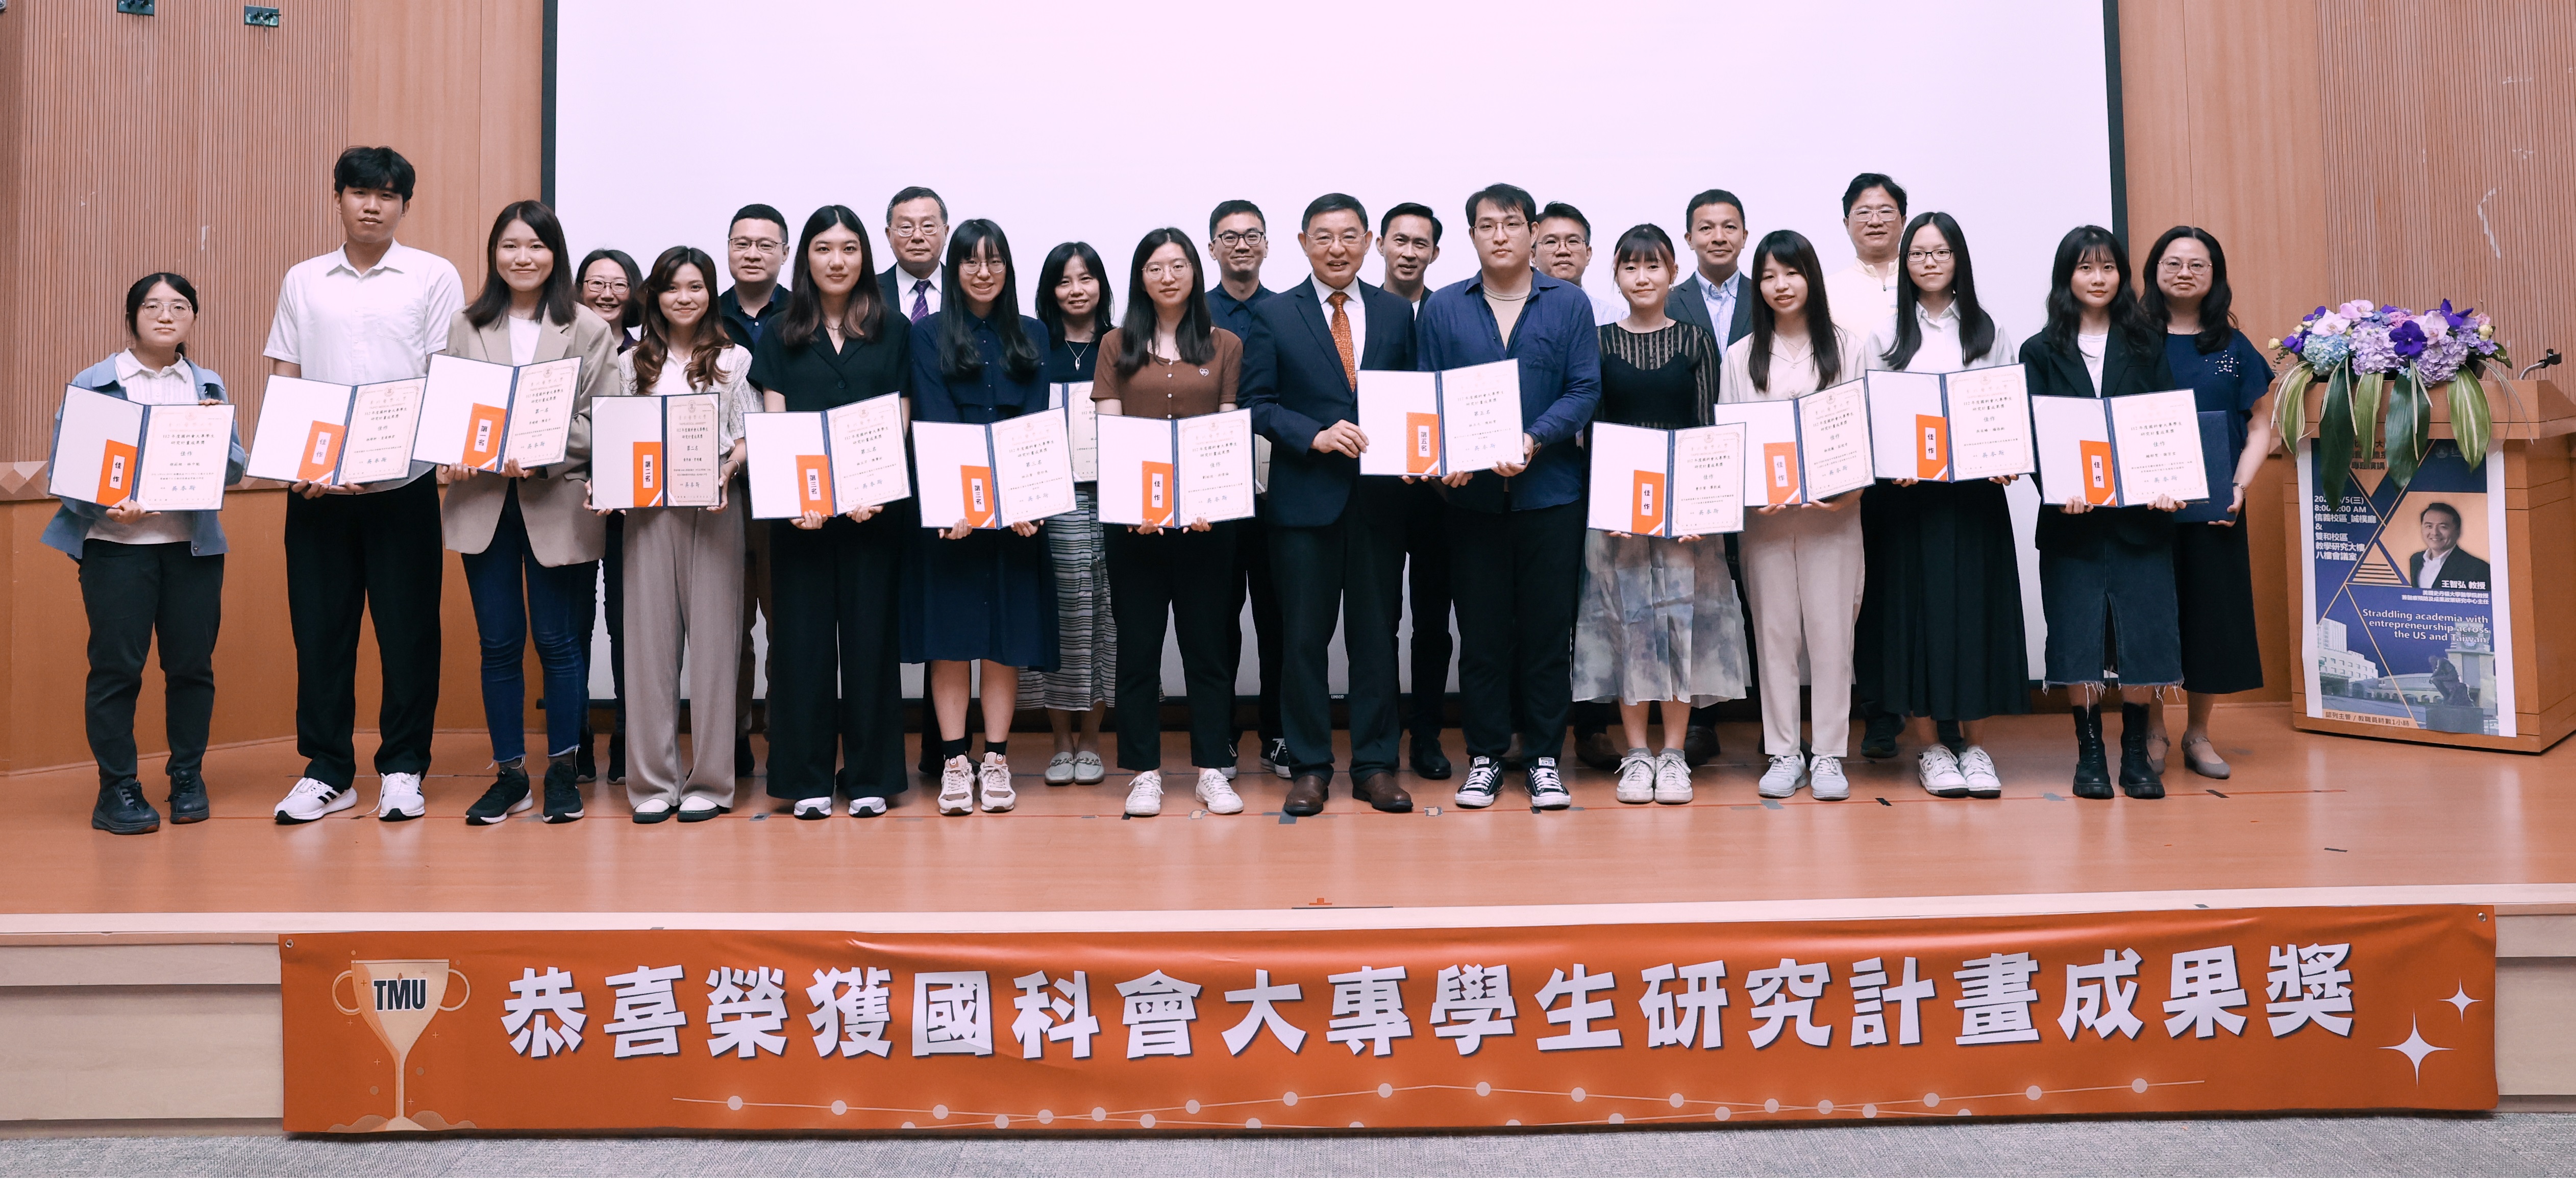 臺北醫學大學112年度國科會大專學生研究計畫成果獎